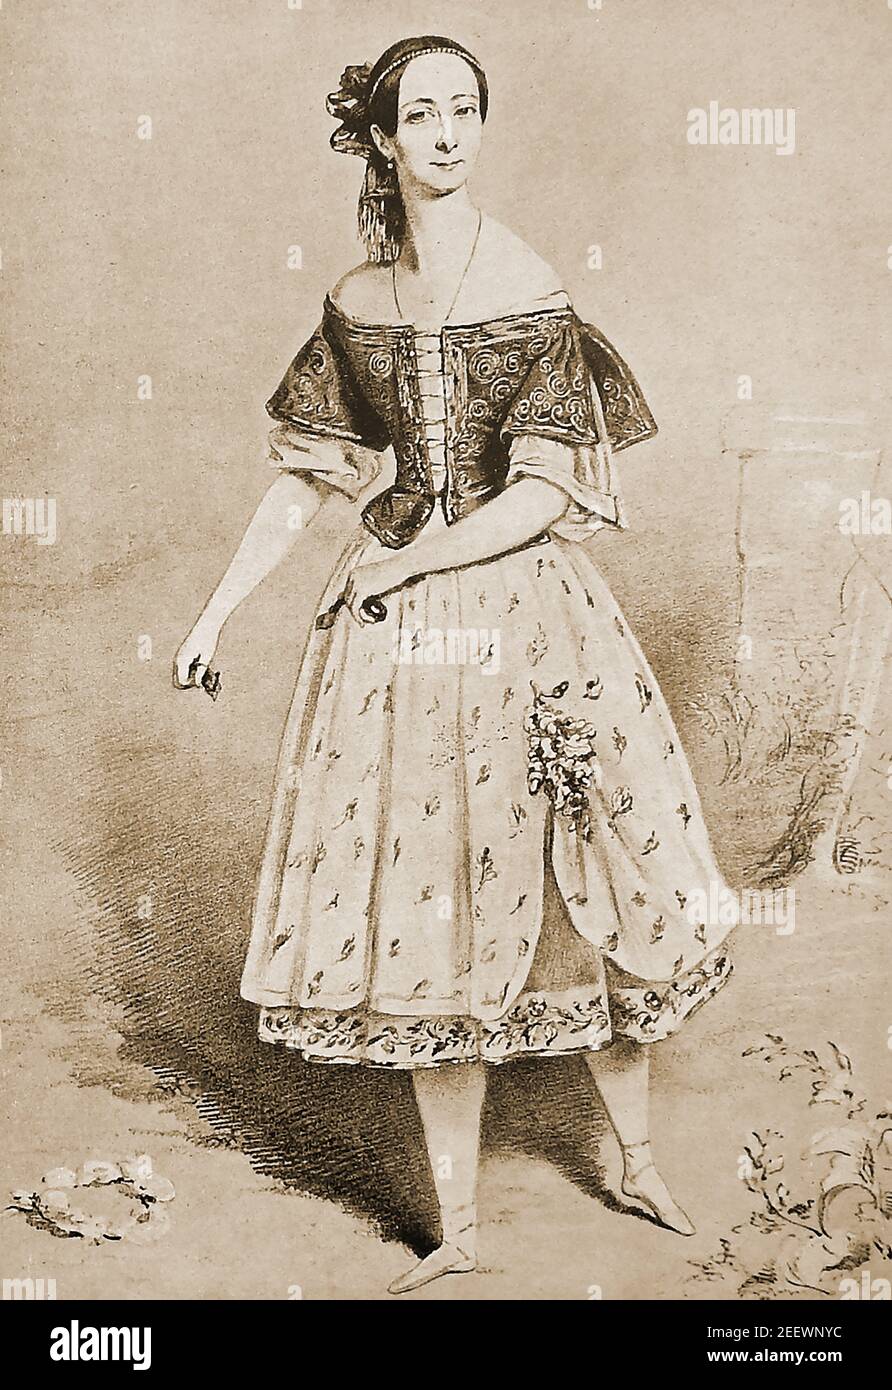 Marie Taglioni, ritratto di Marie Taglioni sul palcoscenico di la Gitana, è stata una ballerina italiana. Marie Taglioni, Comtesse de Voisins (1804 – 1884), è stata una . Fu una delle ballerine più celebrate dell'era del balletto romantico, suonando al Teatro di sua Maestà, a Londra e all'Théâtre de l'Académie Royale de Musique (Paris Opera Ballet). Alcuni la accreditano come essere la prima ballerina allineare ballare en pointe. Foto Stock